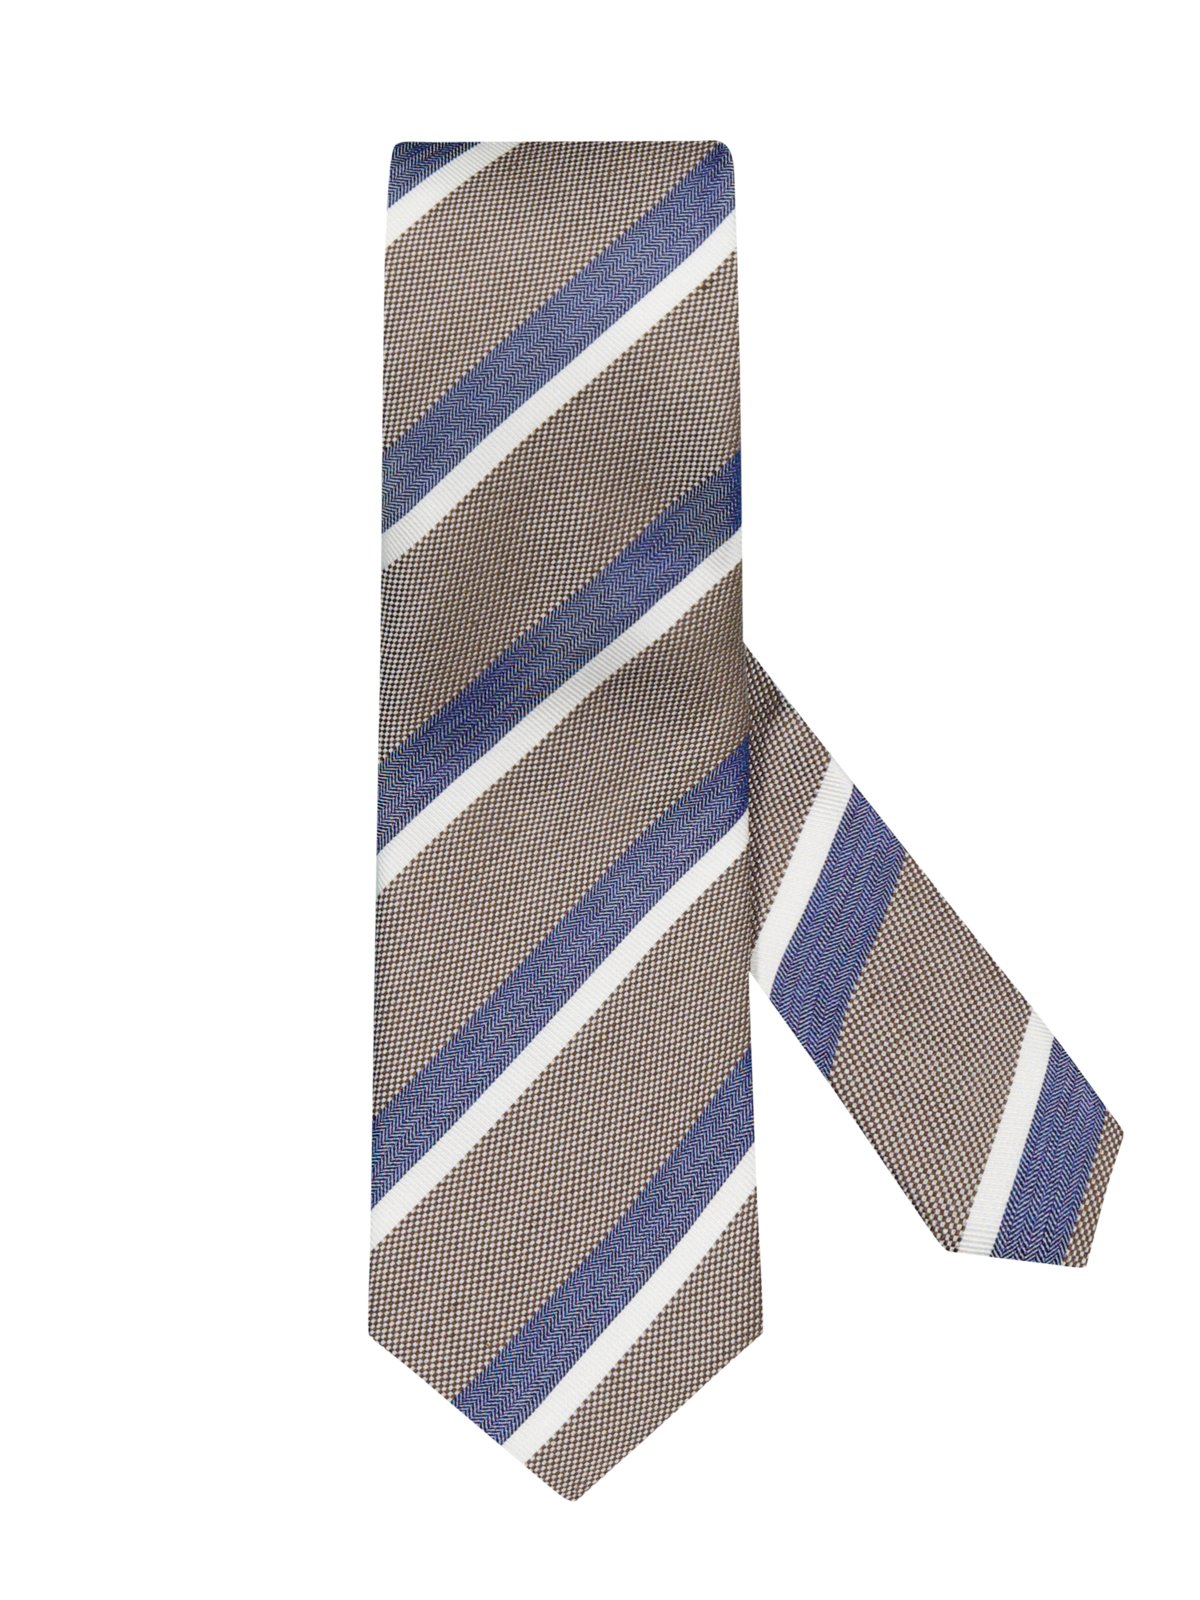 Goldband Krawatte aus Seide und Leinen mit Streifenmuster